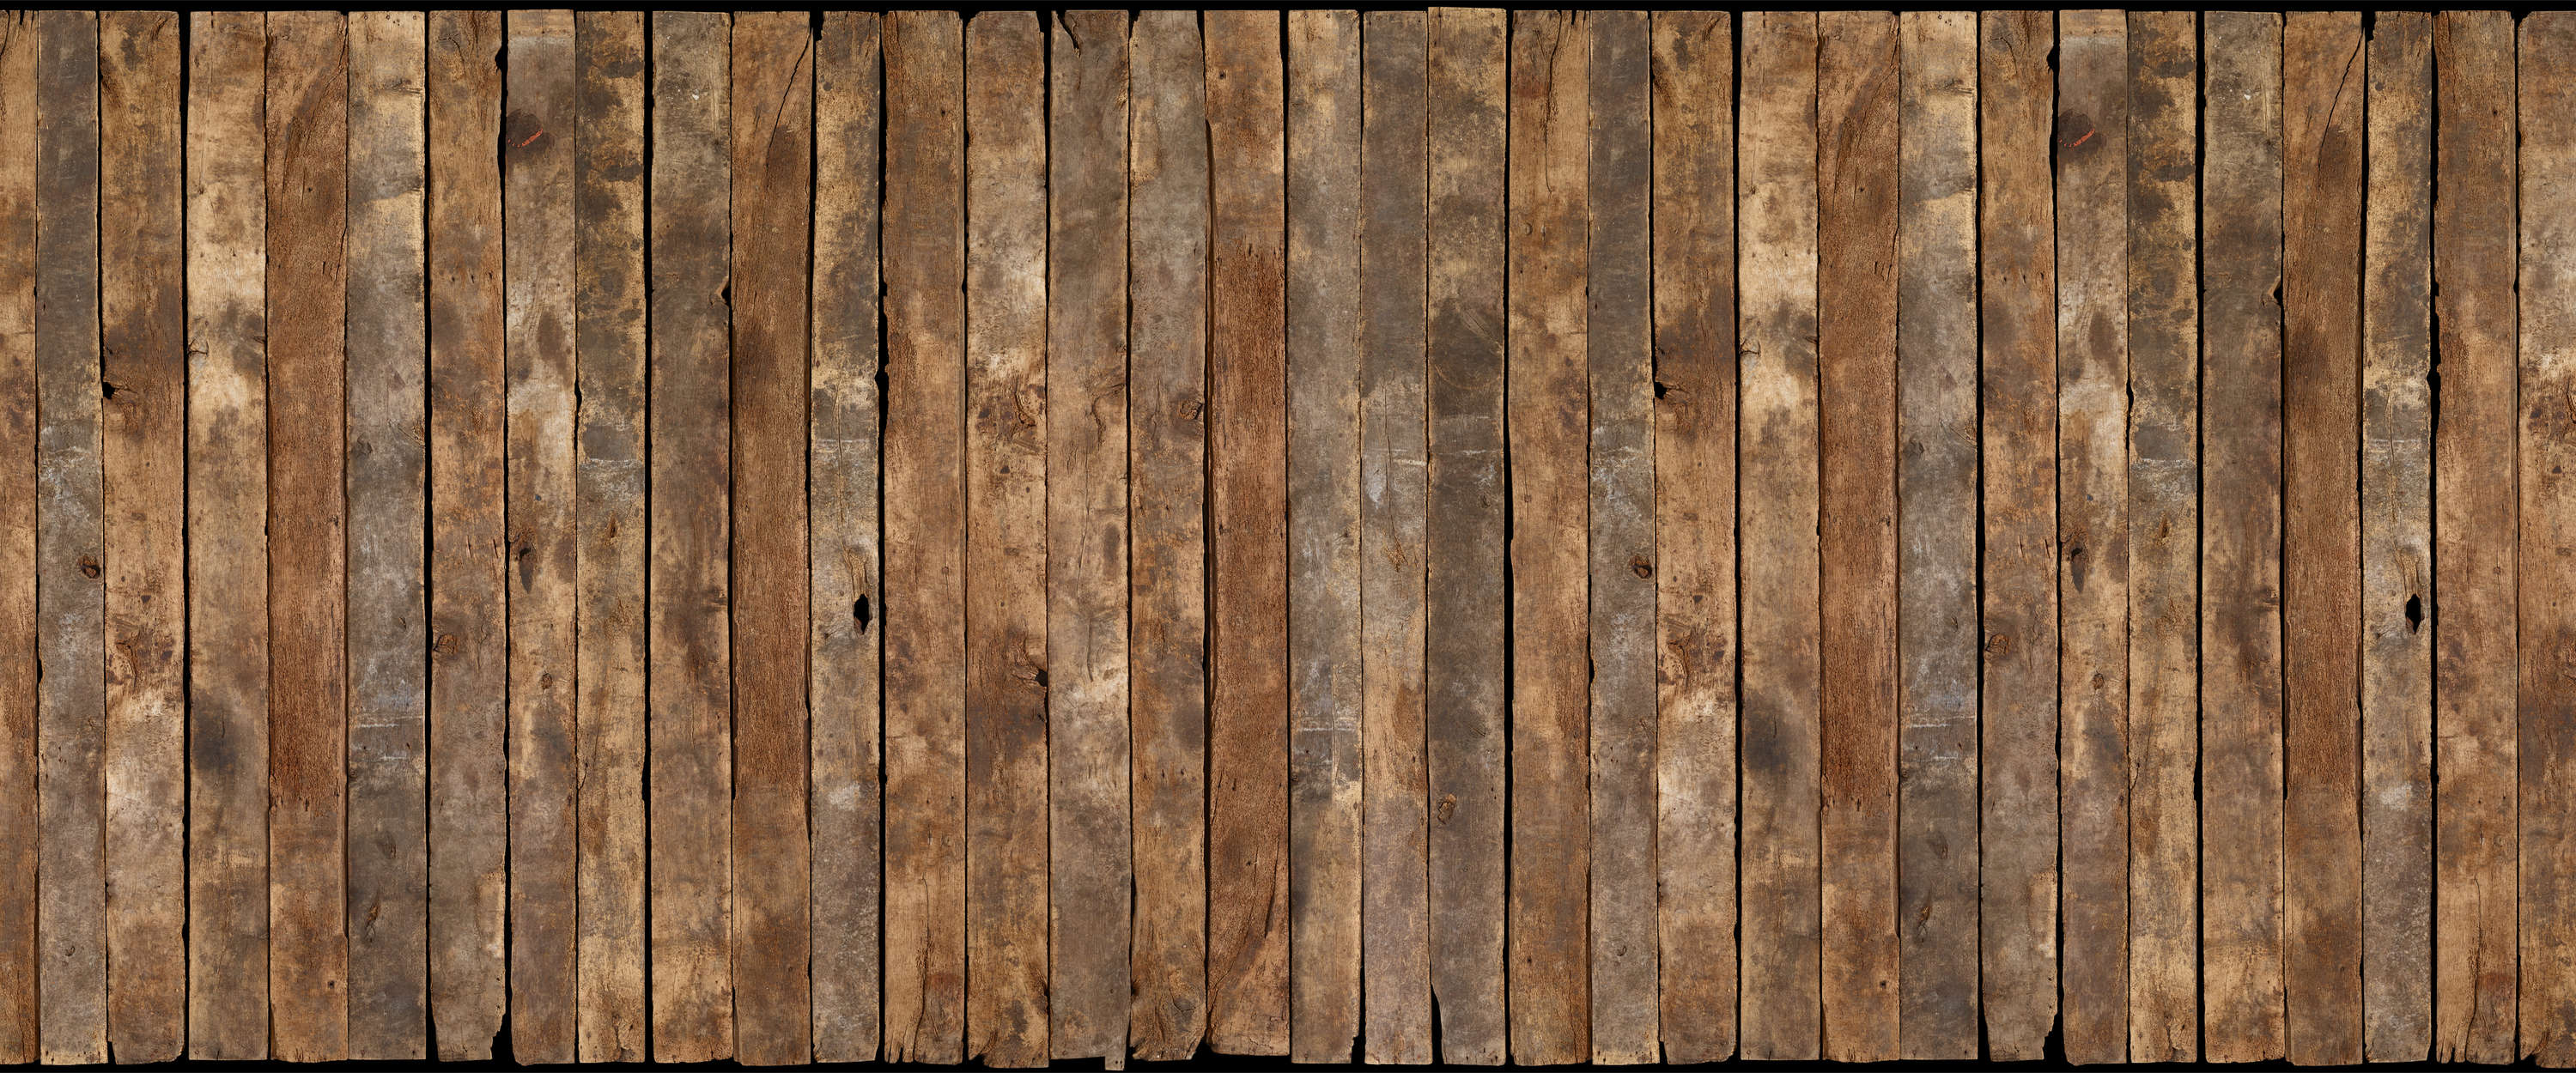             Papel pintado con aspecto de madera utilizado aspecto de vigas rústicas
        